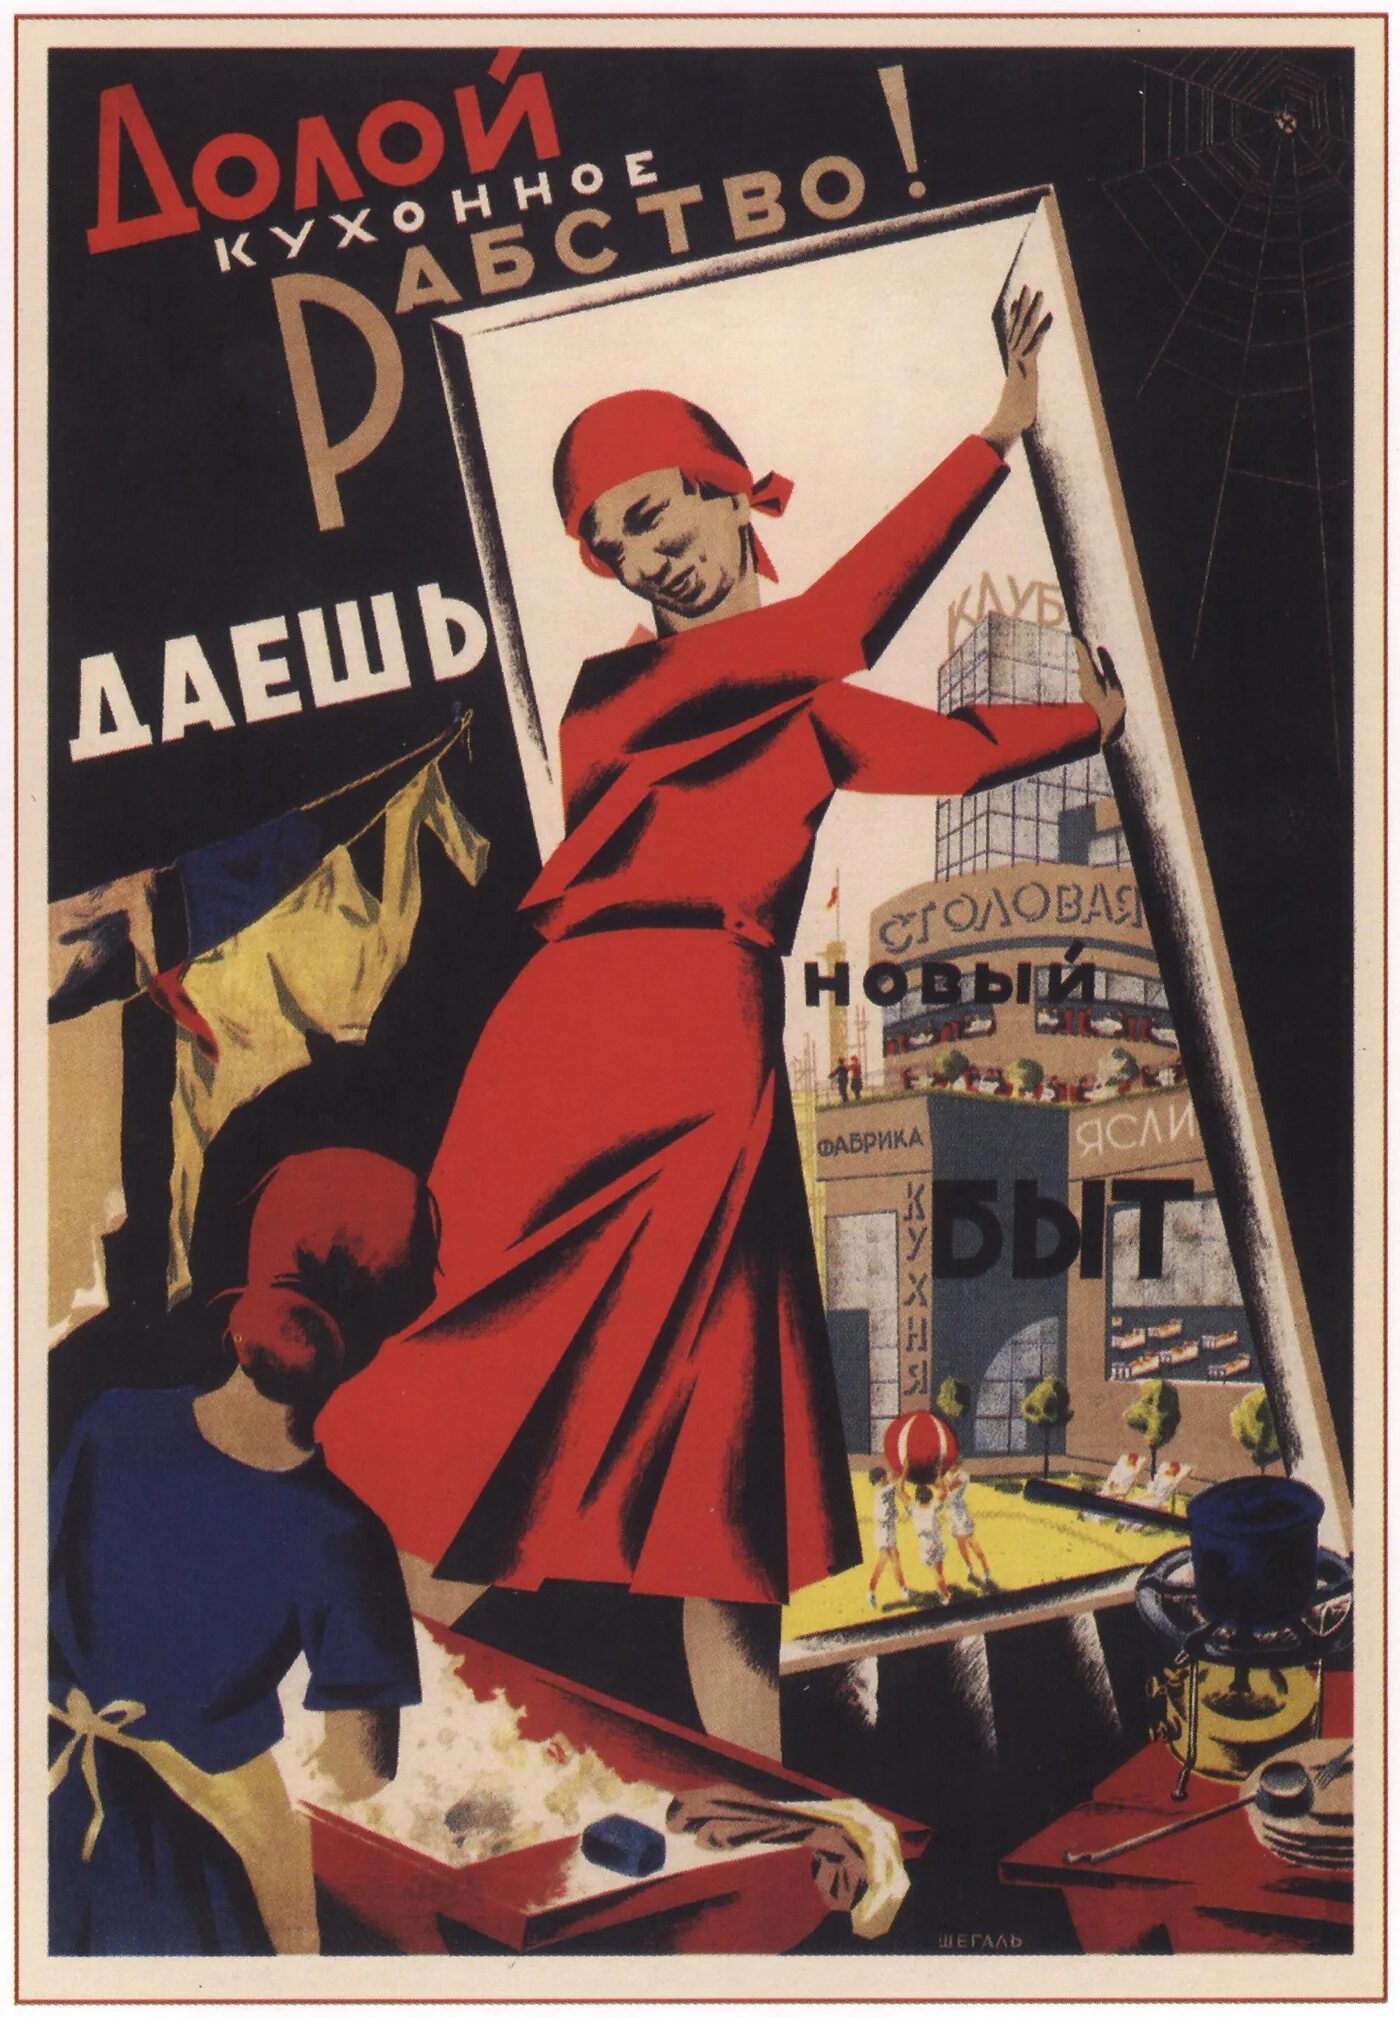 Эмансипация женщин в ссср в 1920 1930. Долой кухонное рабство плакат СССР. Долой кухонное рабство даешь новый быт. Советские плакаты про женщин. Долой кухонное рабство даешь новый быт плакат.